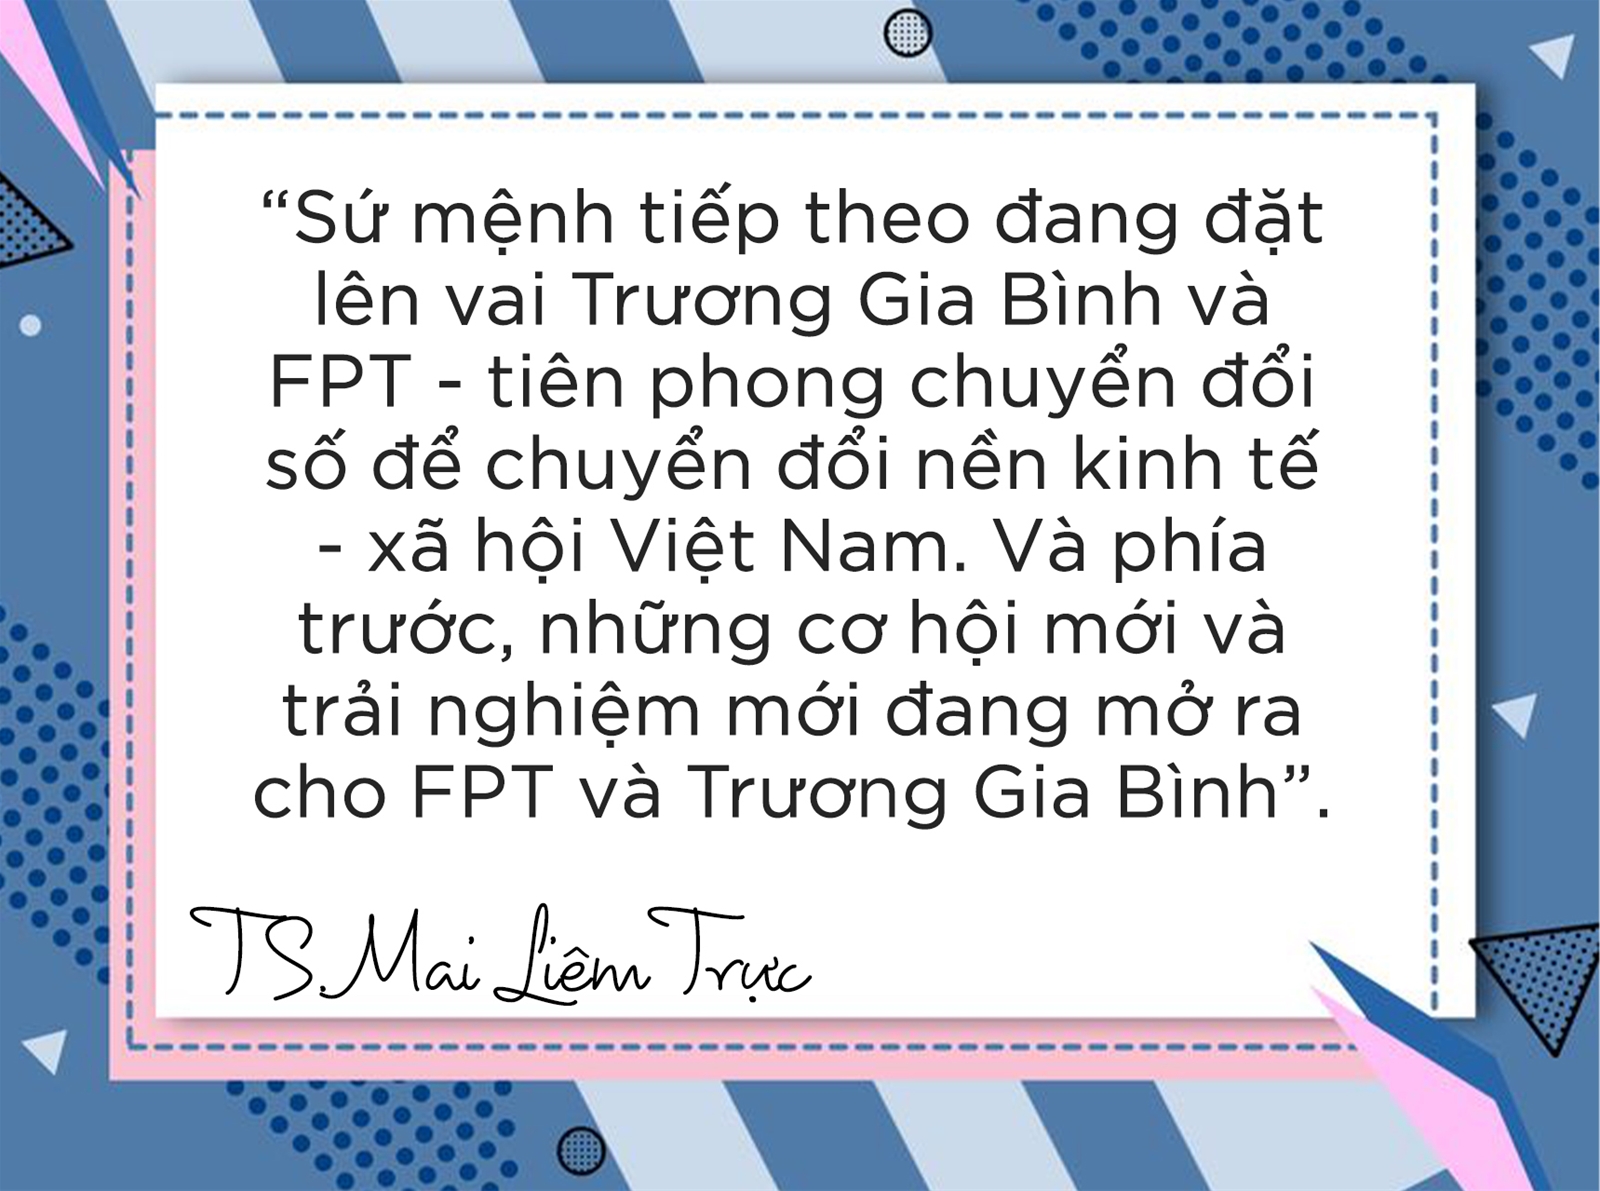 Trương Gia Bình trong mắt người mở đường đưa Internet vào Việt Nam- Ảnh 31.